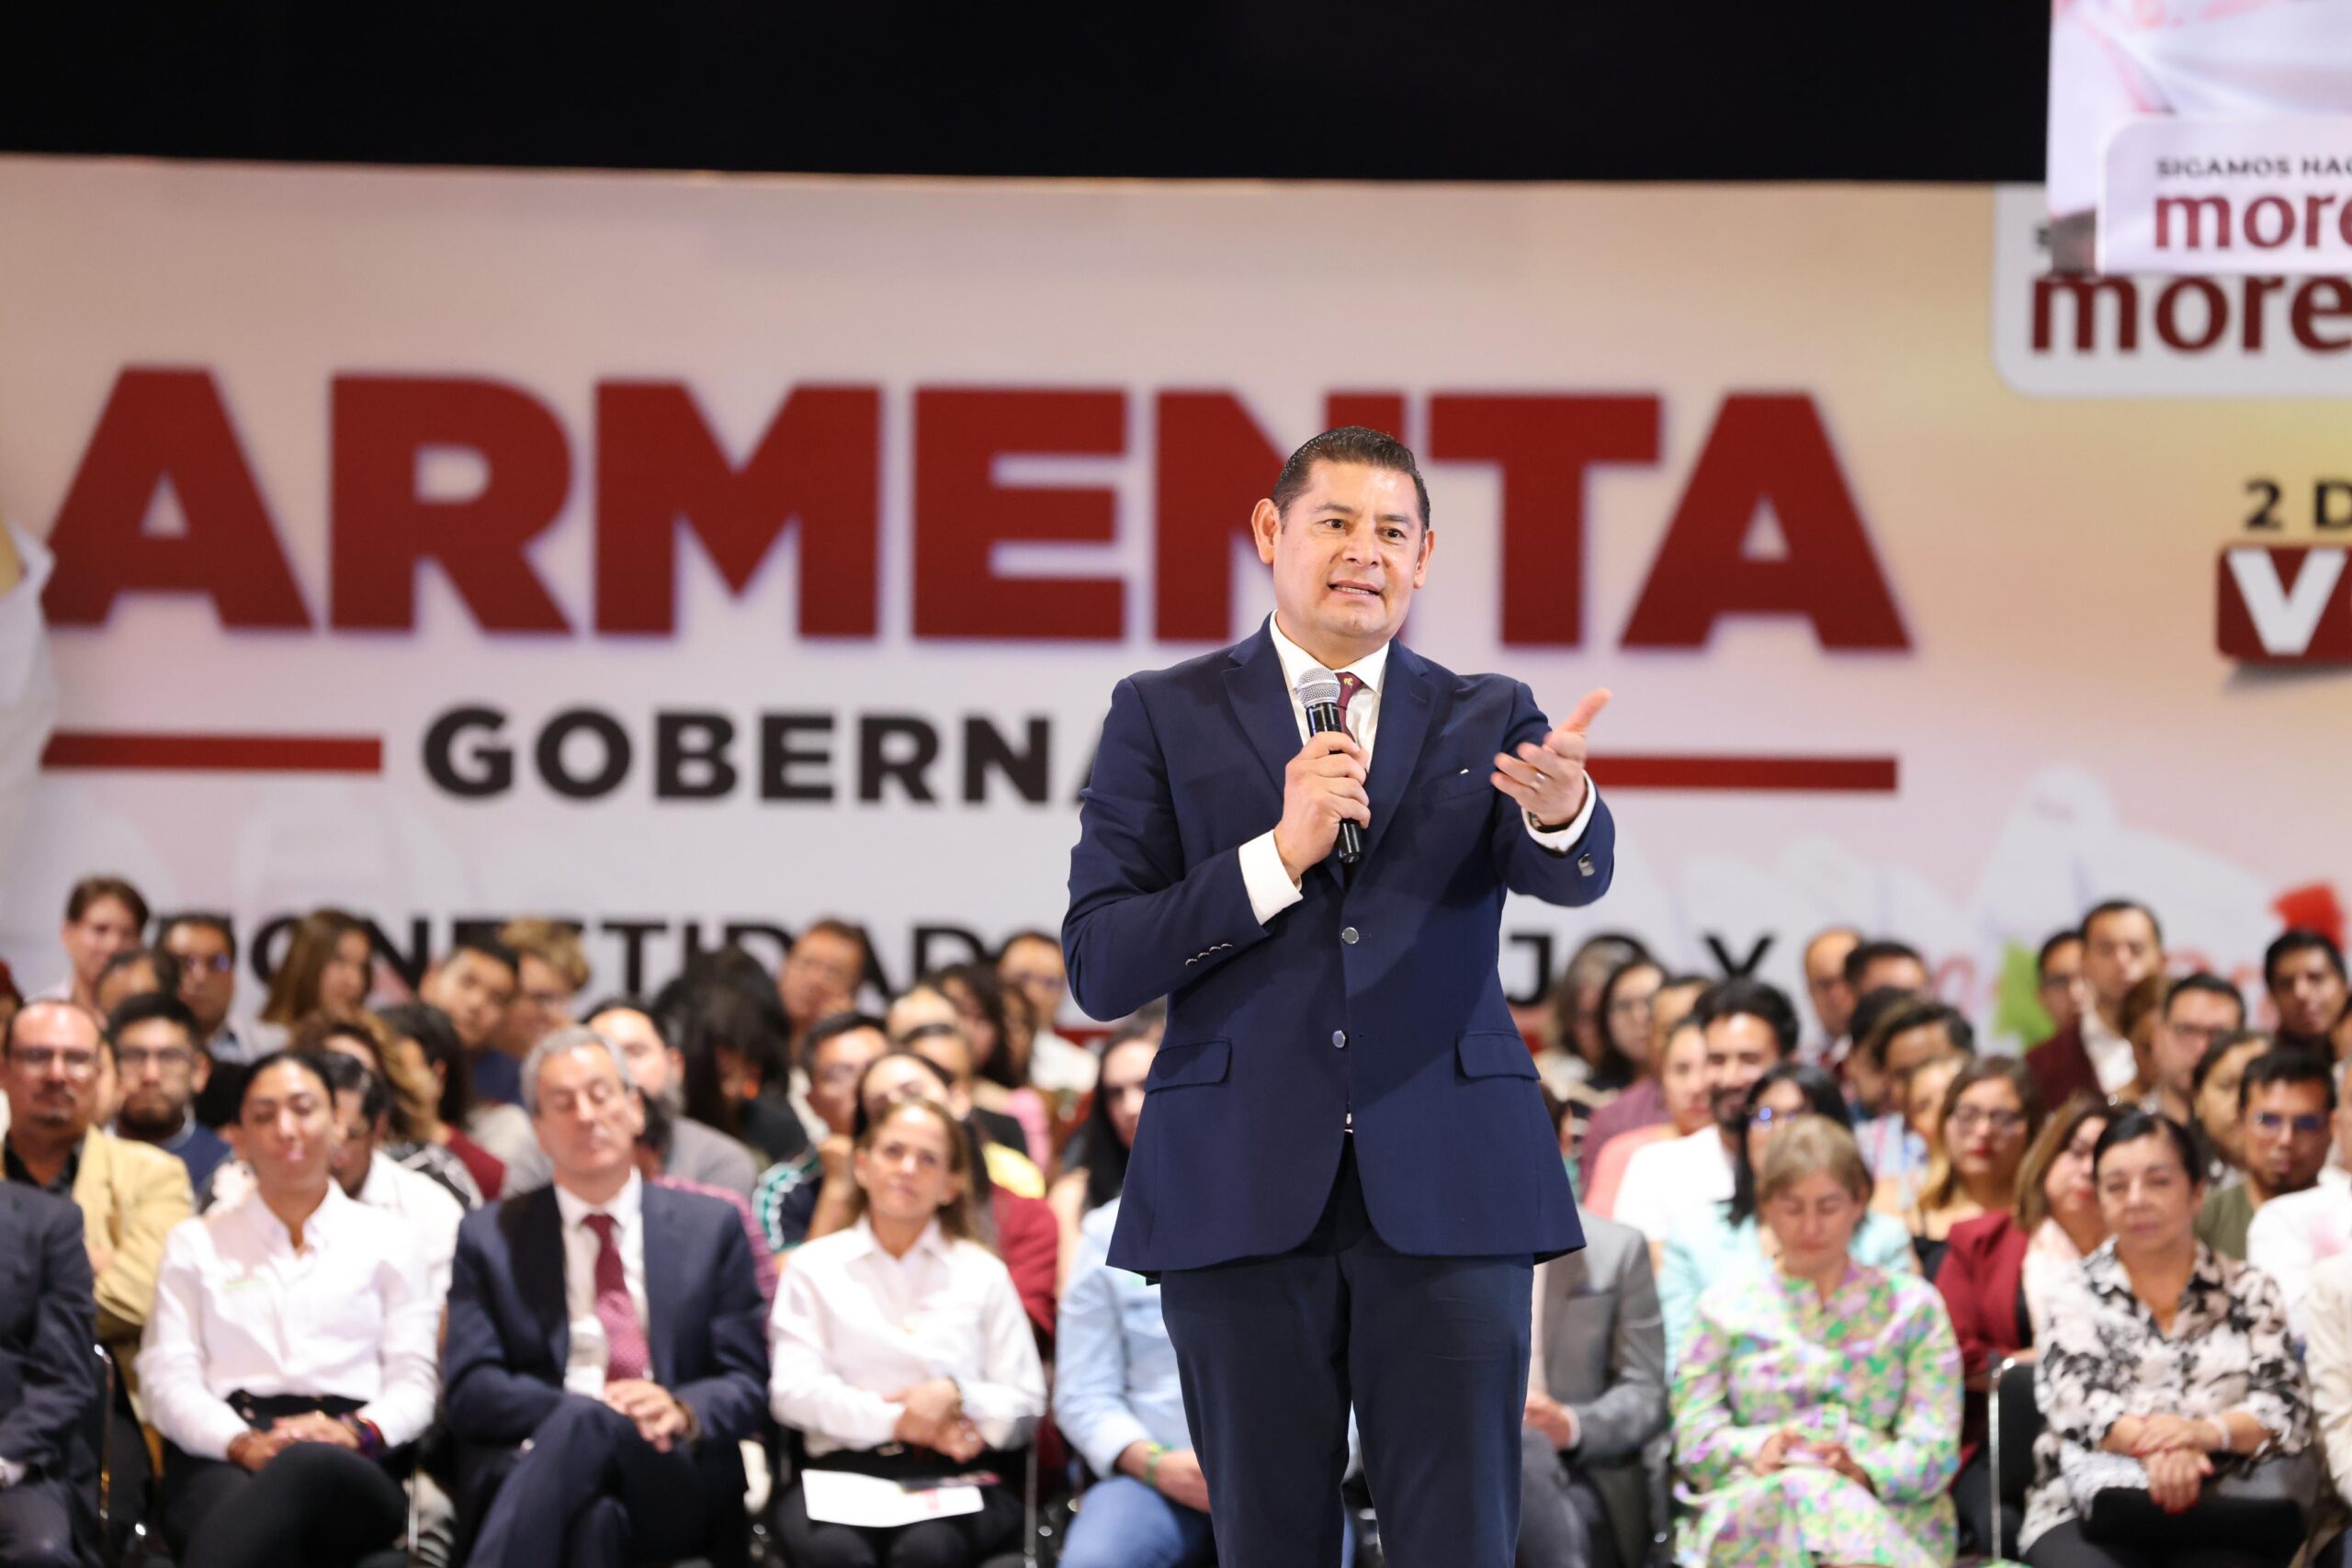 Alejandro Armenta promete transparencia total en su campaña para la gubernatura de Puebla